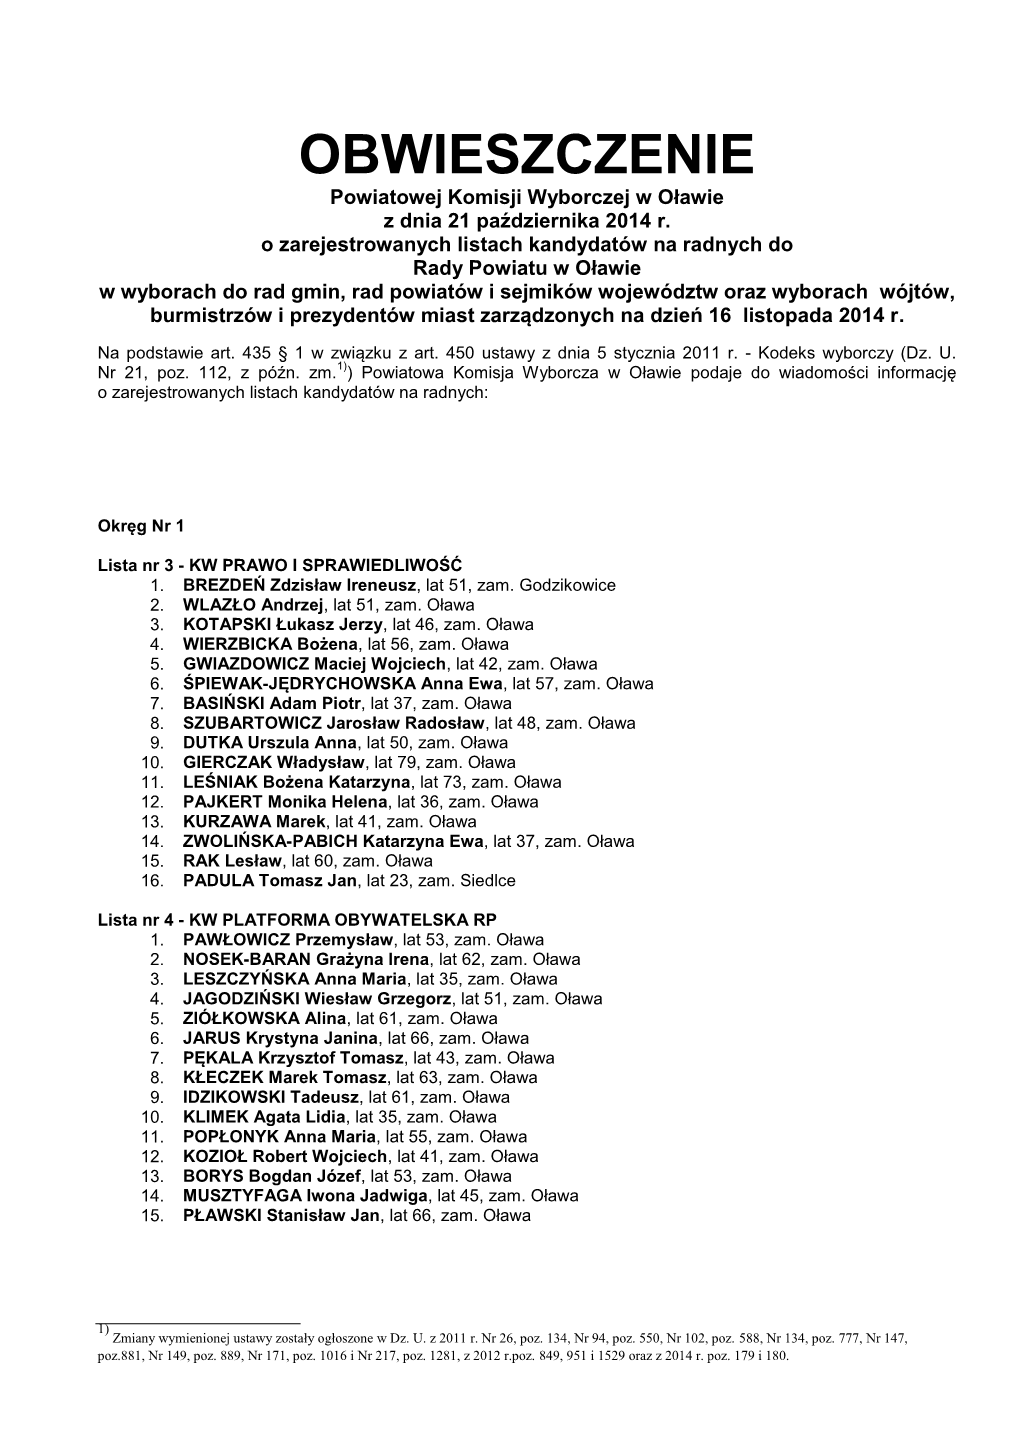 OBWIESZCZENIE Powiatowej Komisji Wyborczej W Oławie Z Dnia 21 Października 2014 R